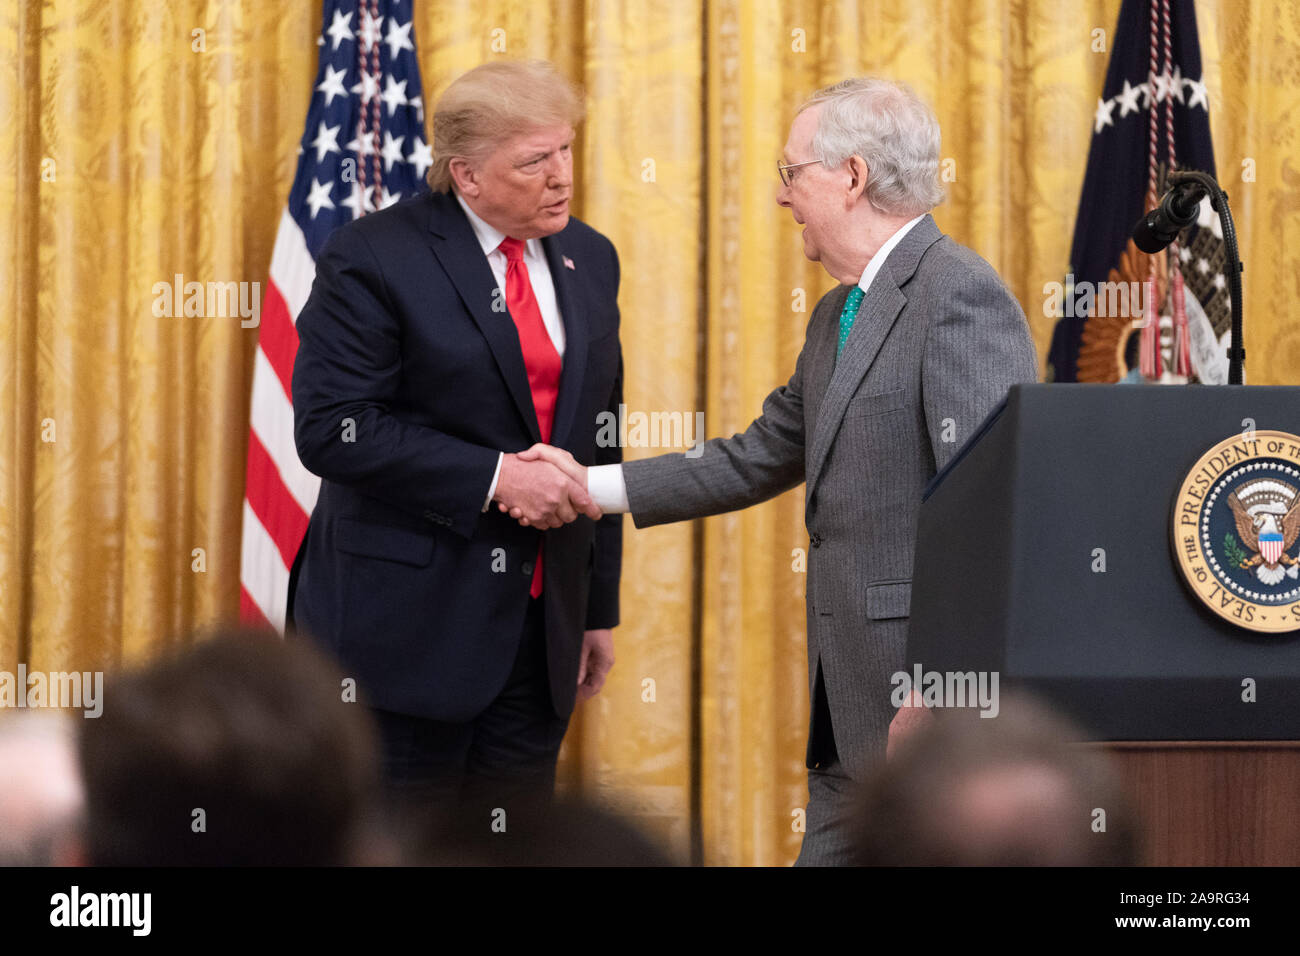 Le président Donald J. Trump honore le chef de la majorité au Sénat Mitch McConnell au cours de la confirmation judiciaire fédéral, d'événements jalons Mercredi, 6 novembre 2019, dans l'East Room de la Maison Blanche. Banque D'Images